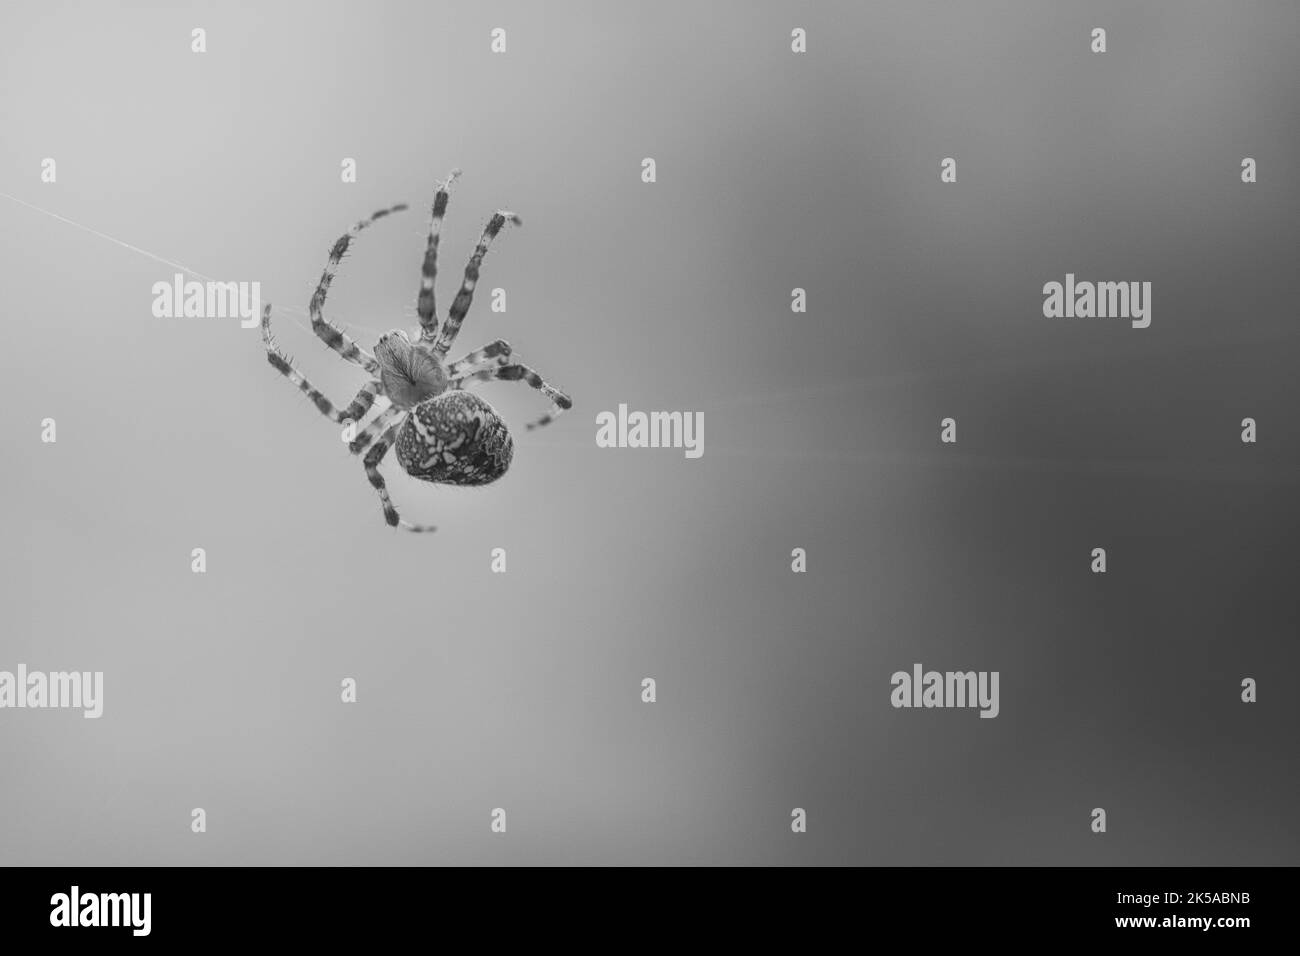 Kreuzspinne in schwarz-weiß geschossen, kriechend auf einem Spinnfaden. Halloween-Schrecken. Unscharfer Hintergrund. Ein nützlicher Jäger unter Insekten. Arachnid. Anim Stockfoto